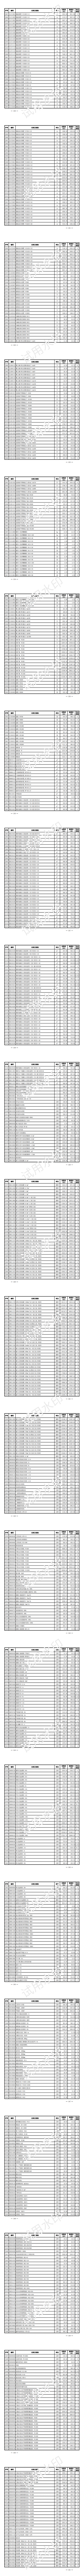 上海水务工程价格信息（2023年4月第三期）_06.png